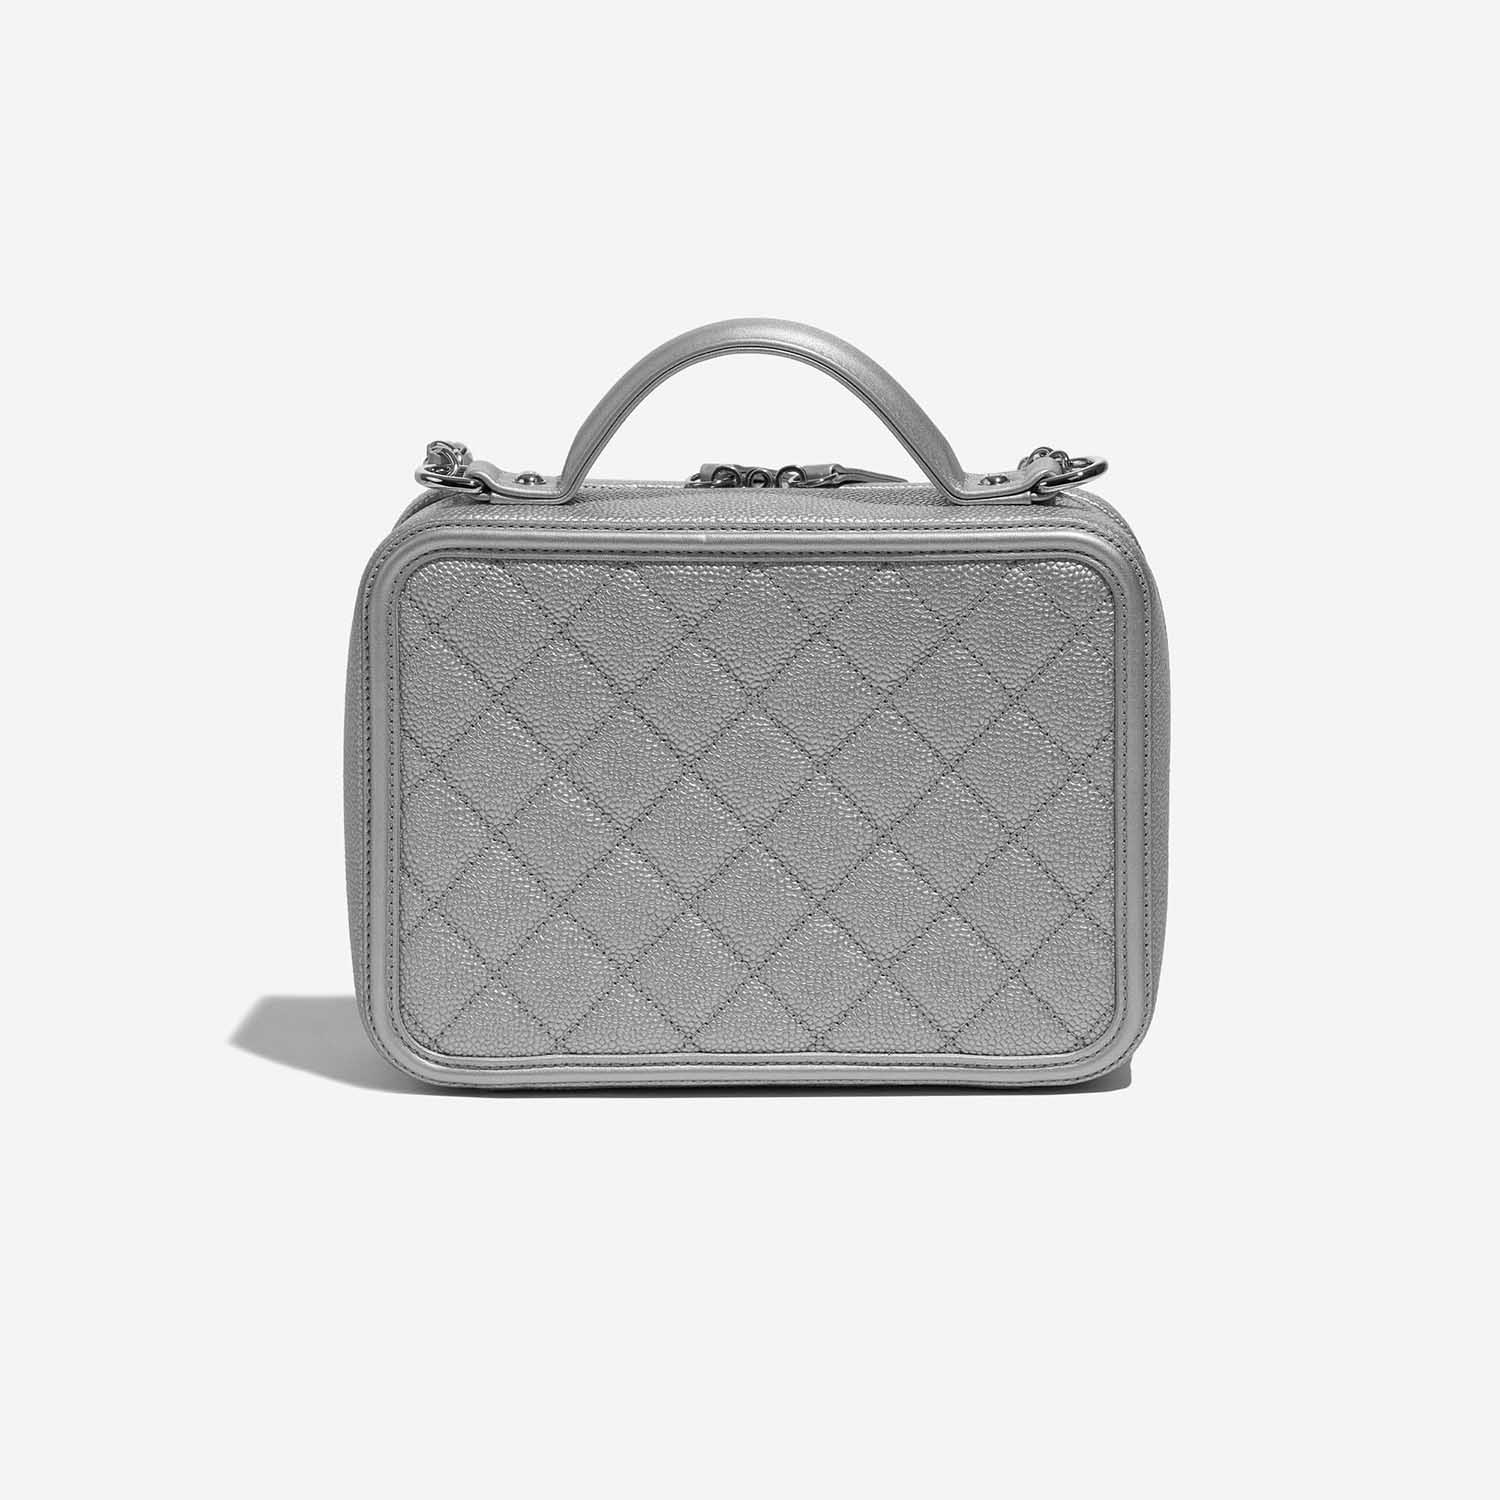 Sac Chanel d'occasion Vanity Case Medium Caviar Silver Silver Back | Vendez votre sac de créateur sur Saclab.com